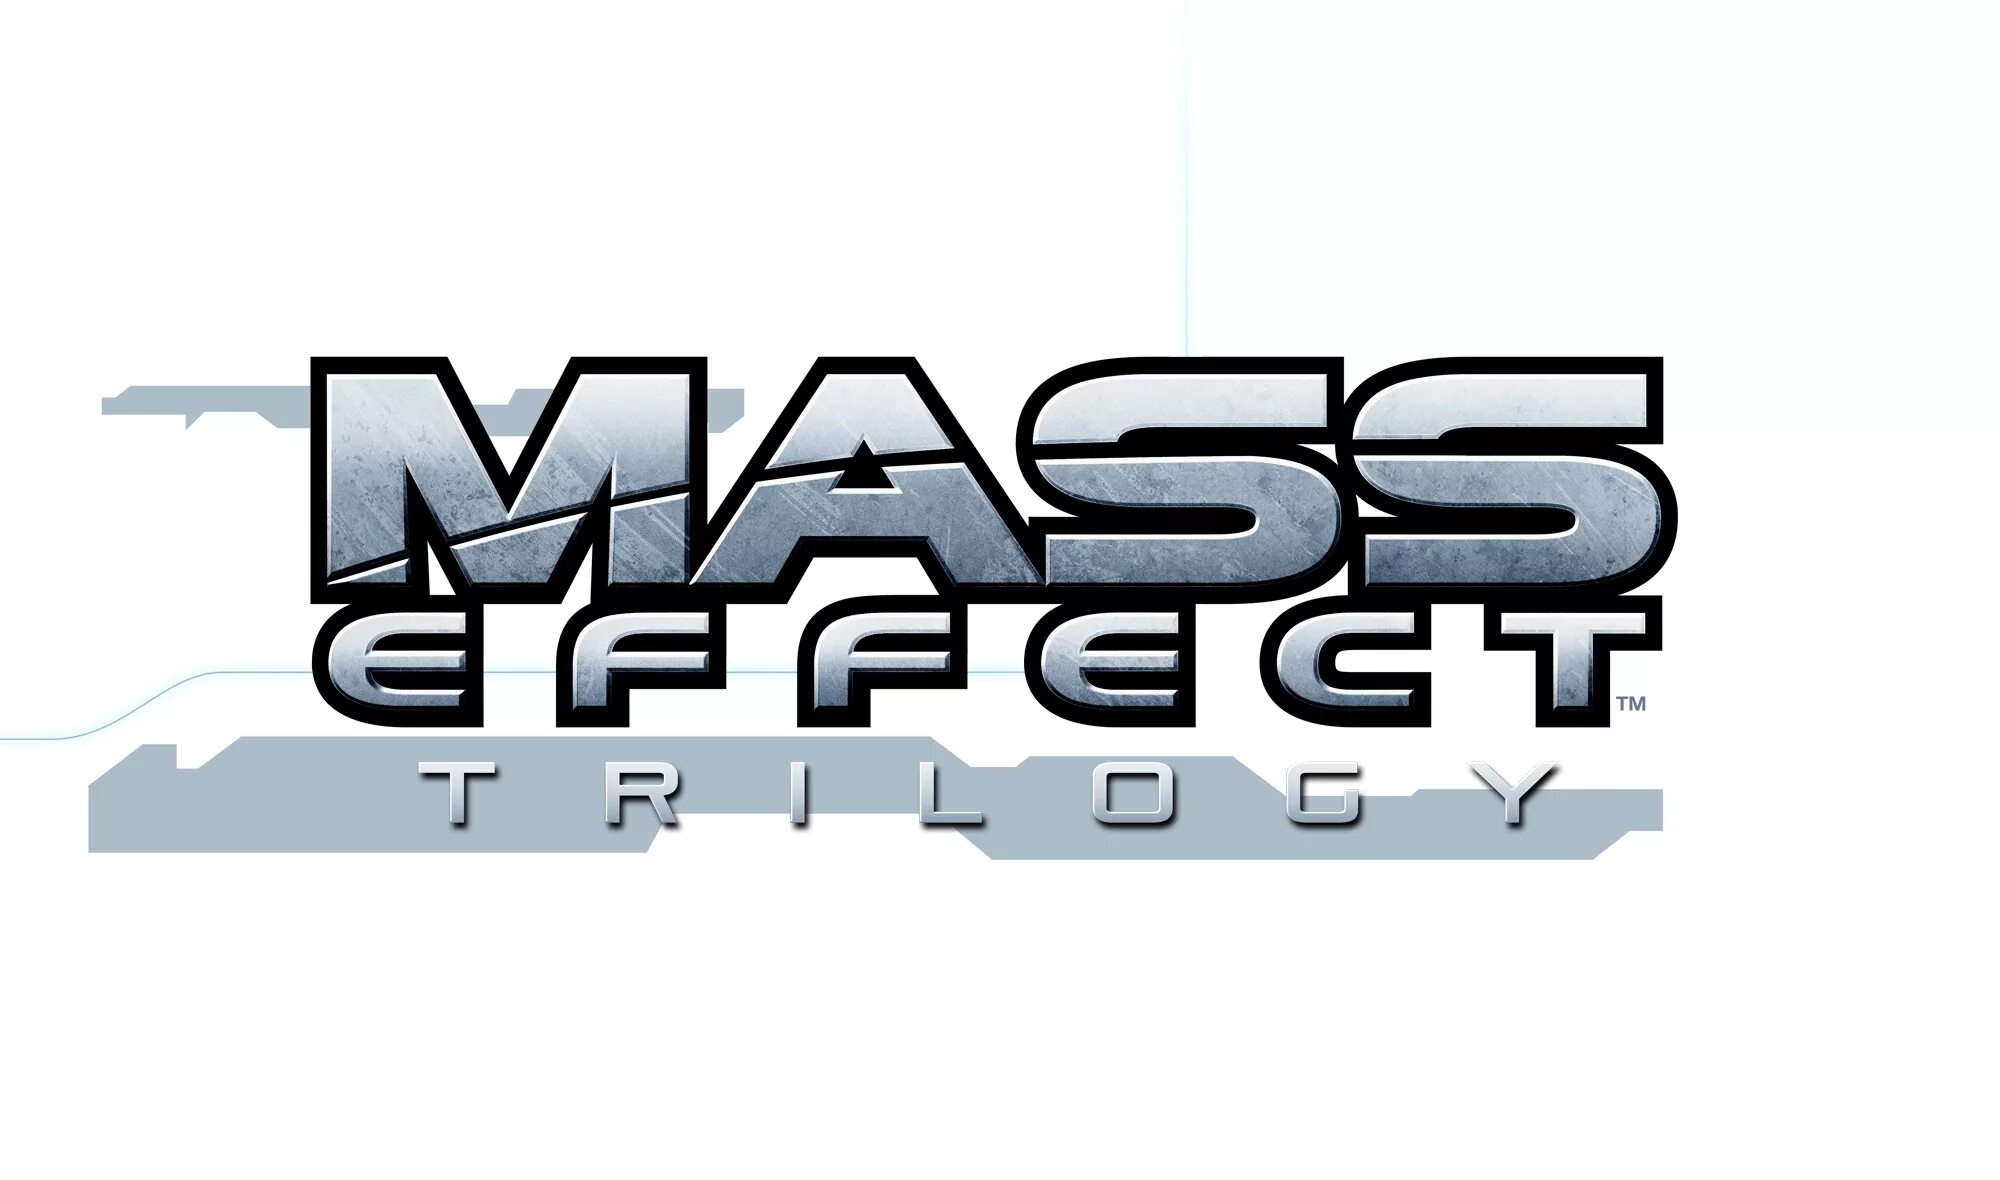 Лого эффекты. Mass Effect логотип. Масс эффект надпись. Логотип масс эффект 3. Логотип масс эффект без фона.